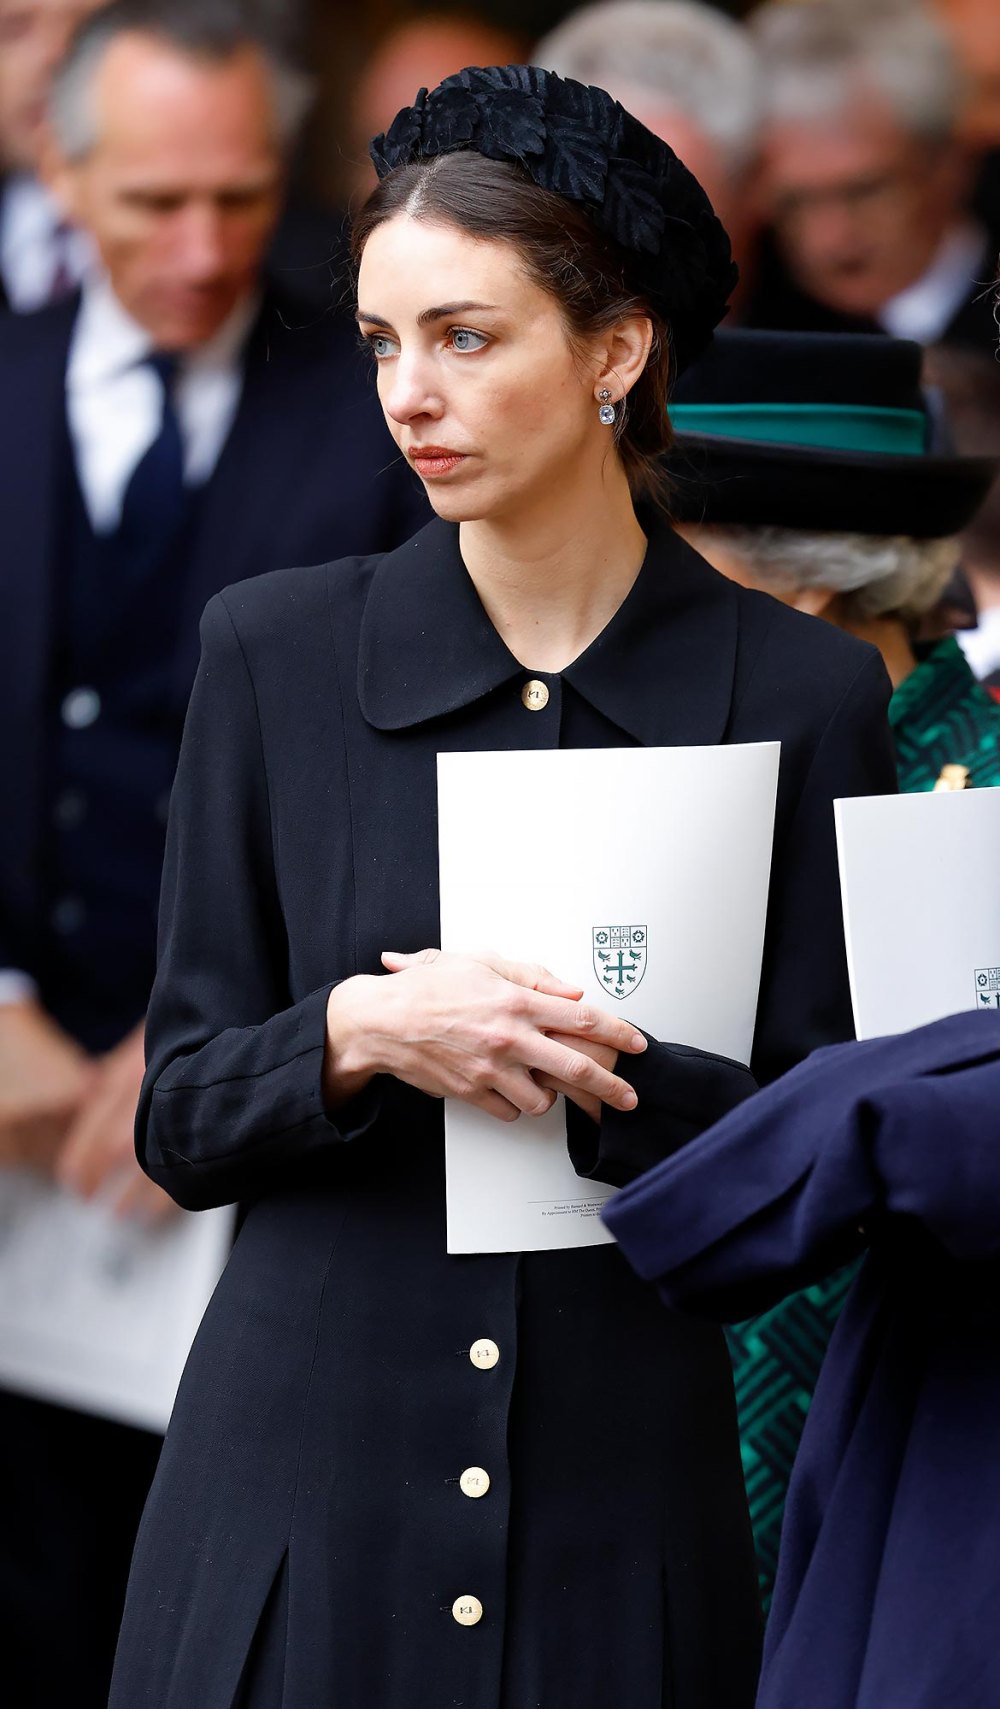 Rose Hanbury ist sehr verärgert über Gerüchte über die Prinz-William-Affäre, die nun wieder auf Expertenmeinungen auftauchen